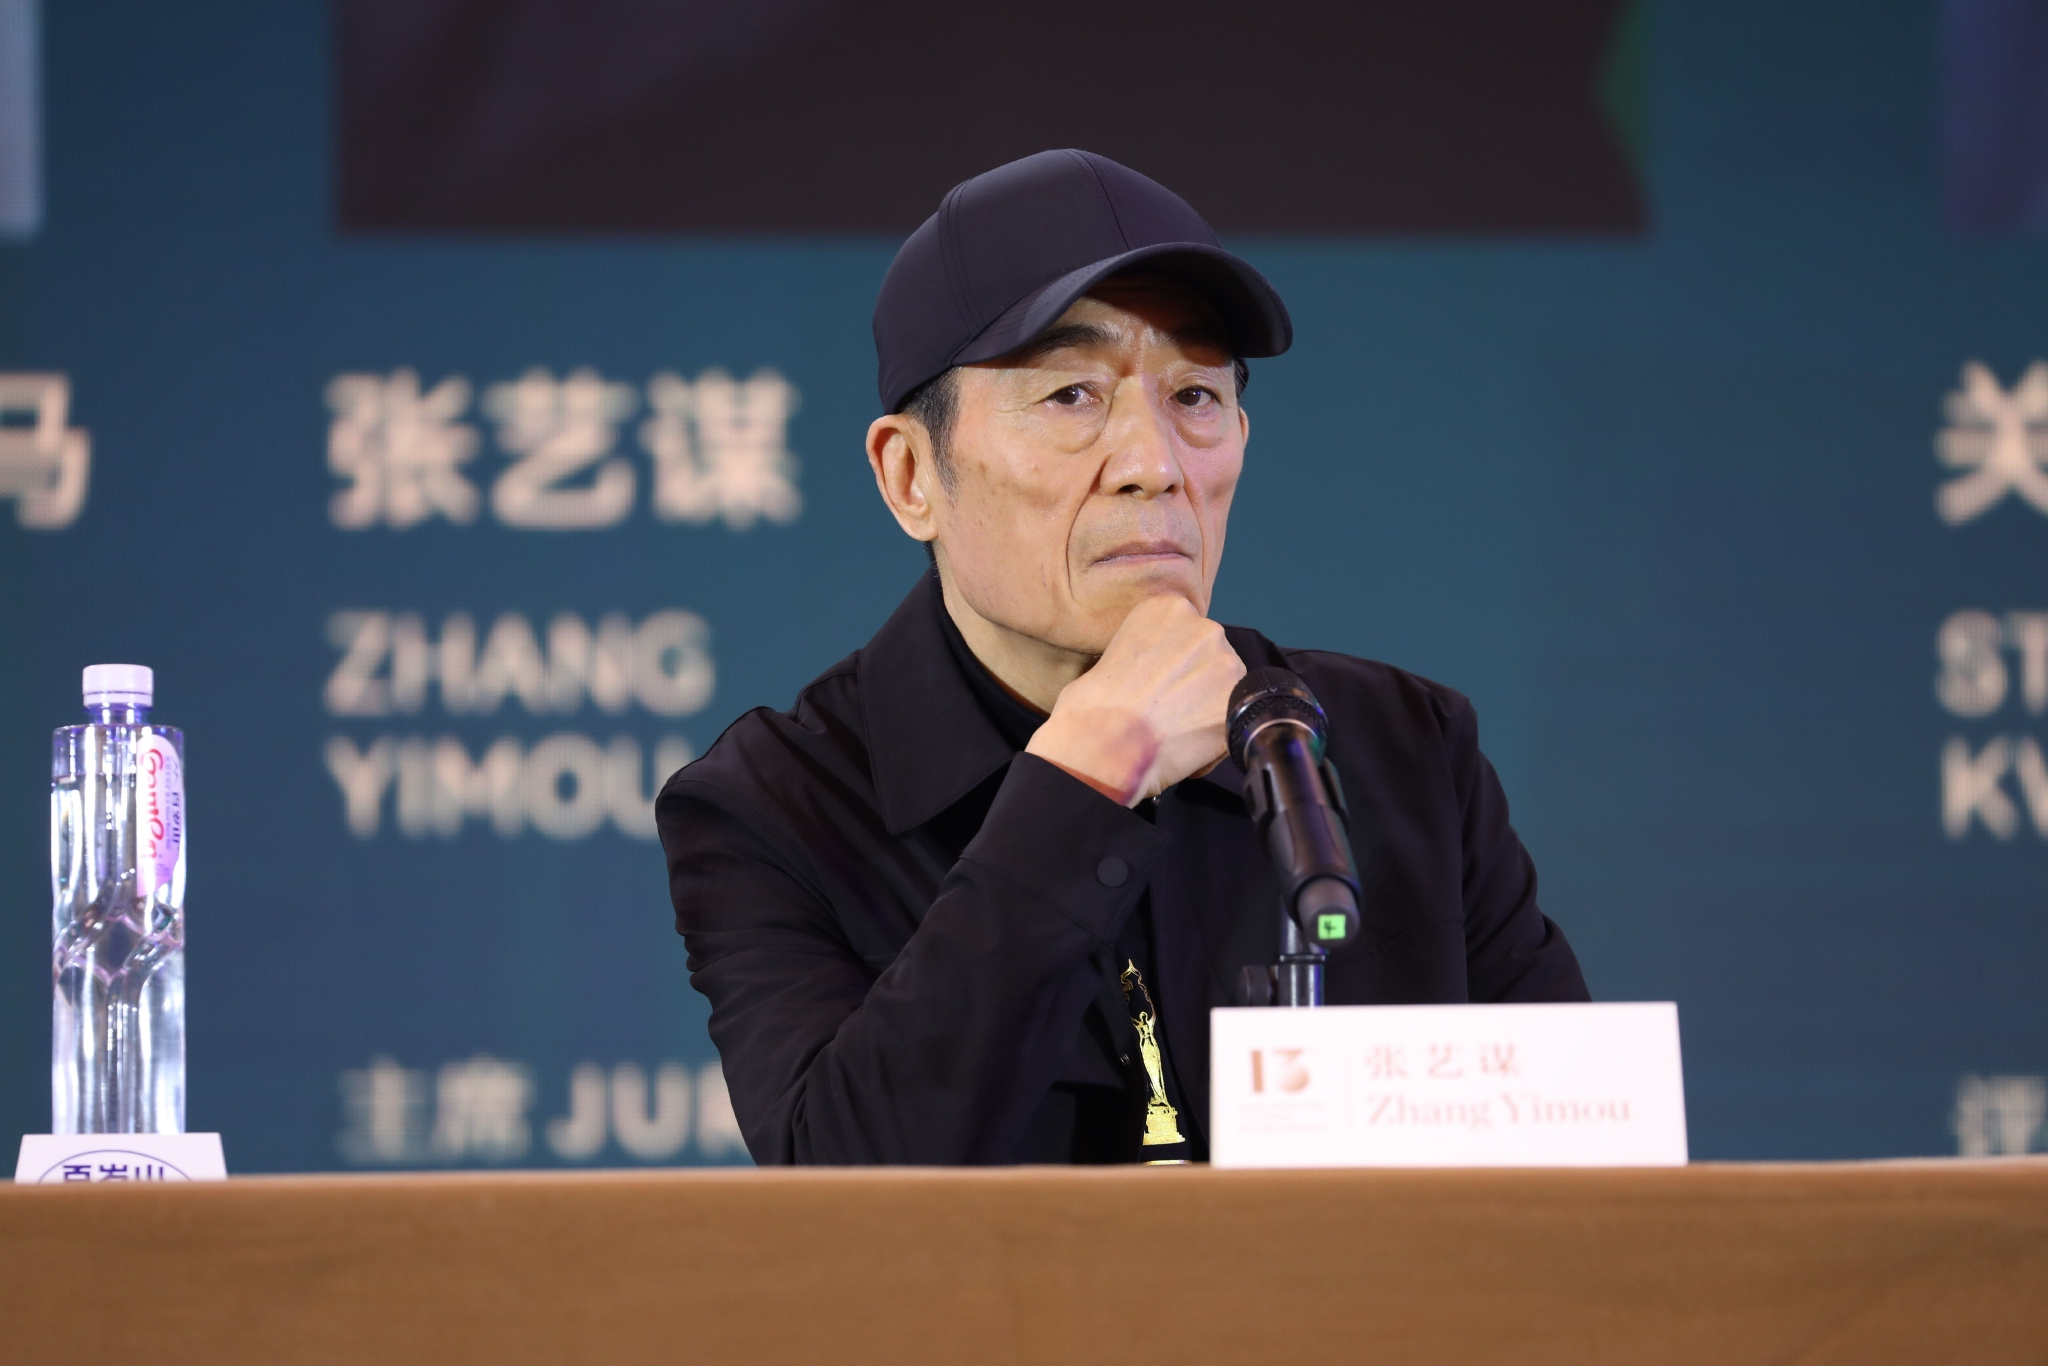 張藝謀現身第十三屆北京國際電影節天壇獎國際評委會媒體見面會。  圖/IC PHOTO